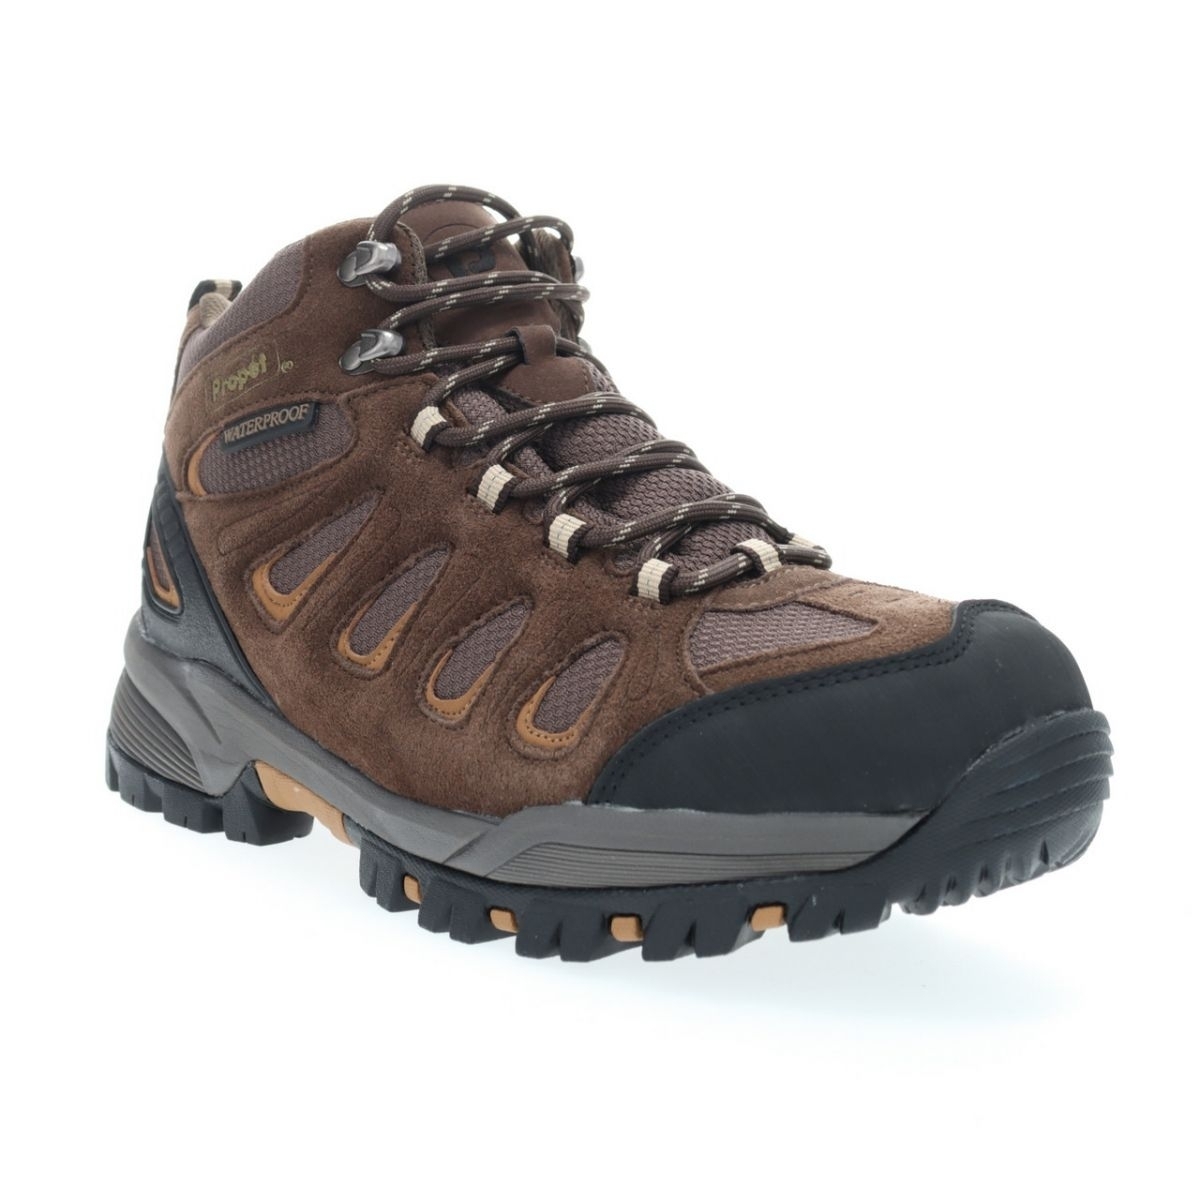 Propet Men's Ridge Walker Hiking Boot Brown - M3599BR 8 XX US Men BROWN - BROWN, 15 XX-Wide